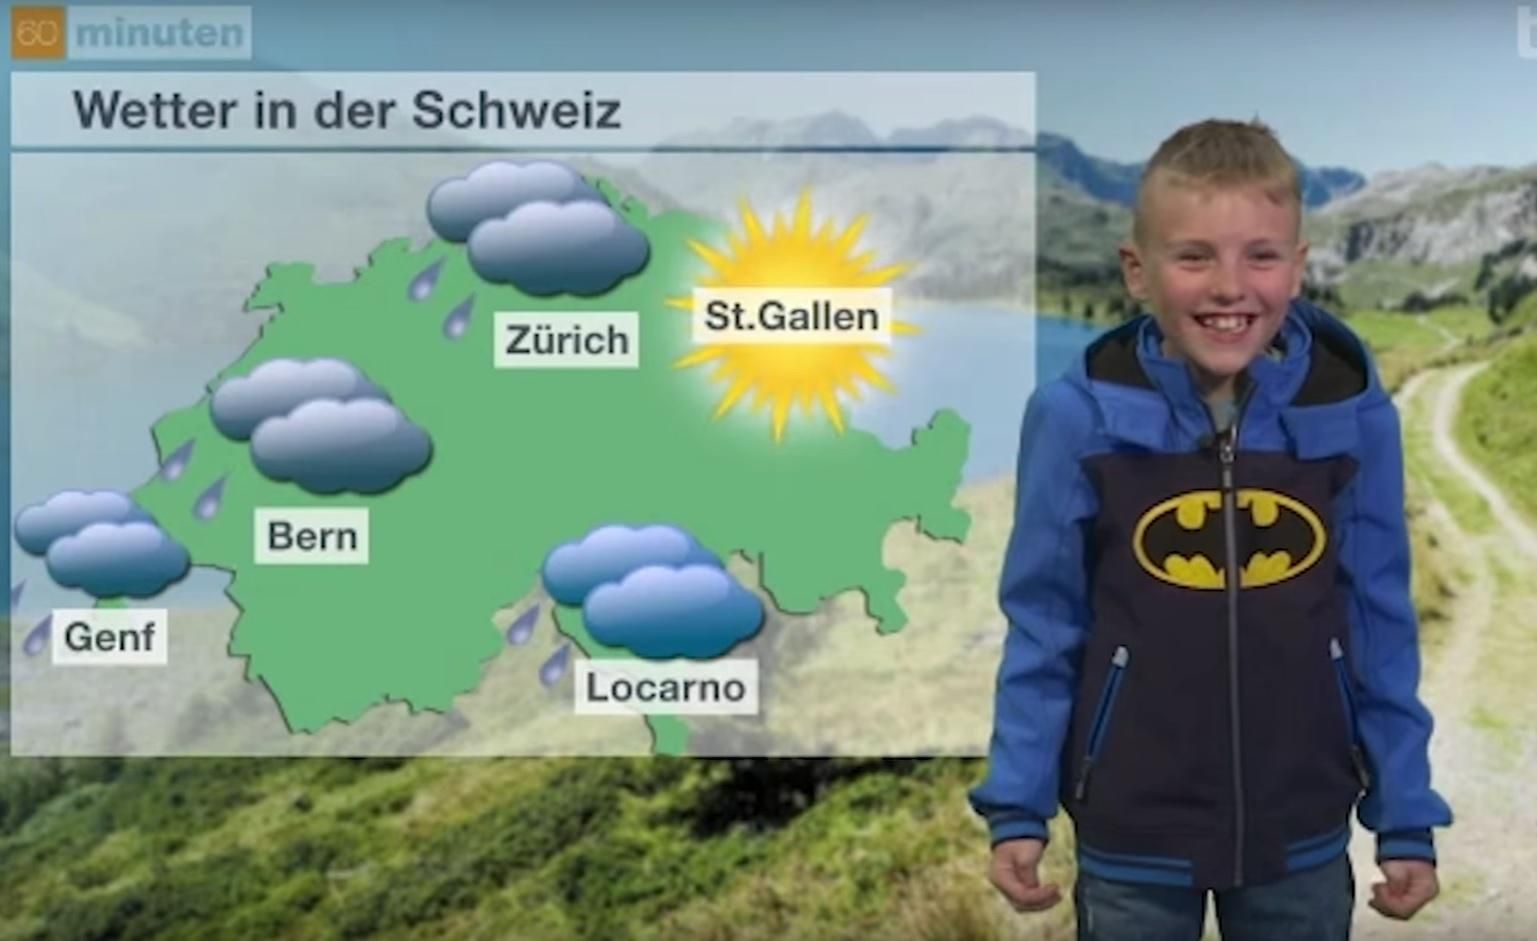 Мальчик и его эмоциональный прогноз погоды покорил сеть: видео